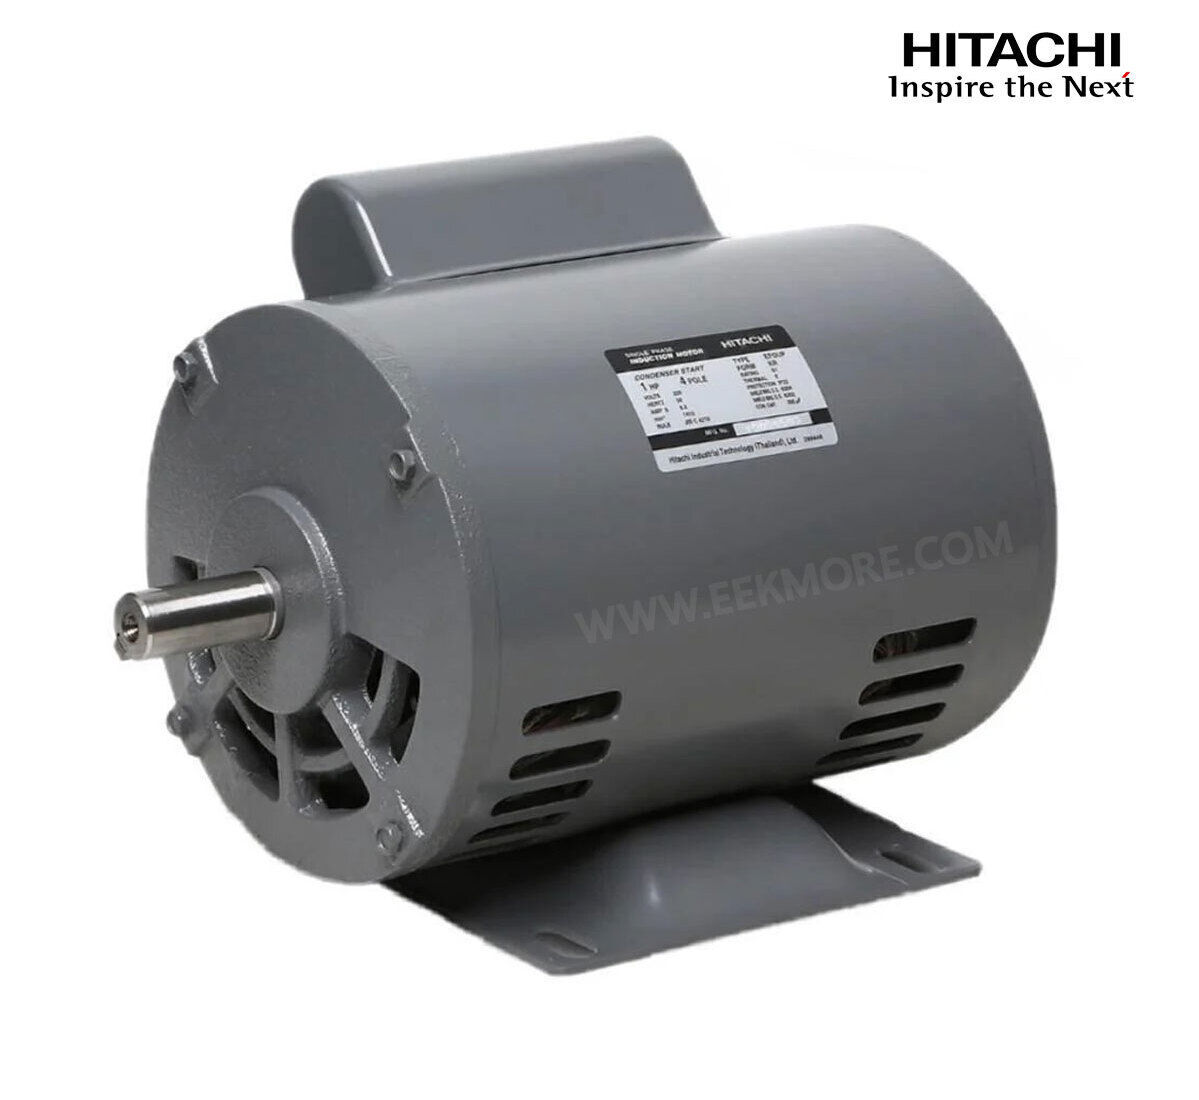 มอเตอร์ฮิตาชิของแท้ 100% HITACHI รุ่น EFOUP-KR กำลัง 1 แรงม้า (0.75 KW.) กำลังไฟฟ้าที่ใช้ 220V ความเร็วรอบตัวเปล่า 1450 RPM แกนเพลามอเตอร์ 19 MM.รับประกัน 3 ปี มีของพร้อมจัดส่งทุกวัน